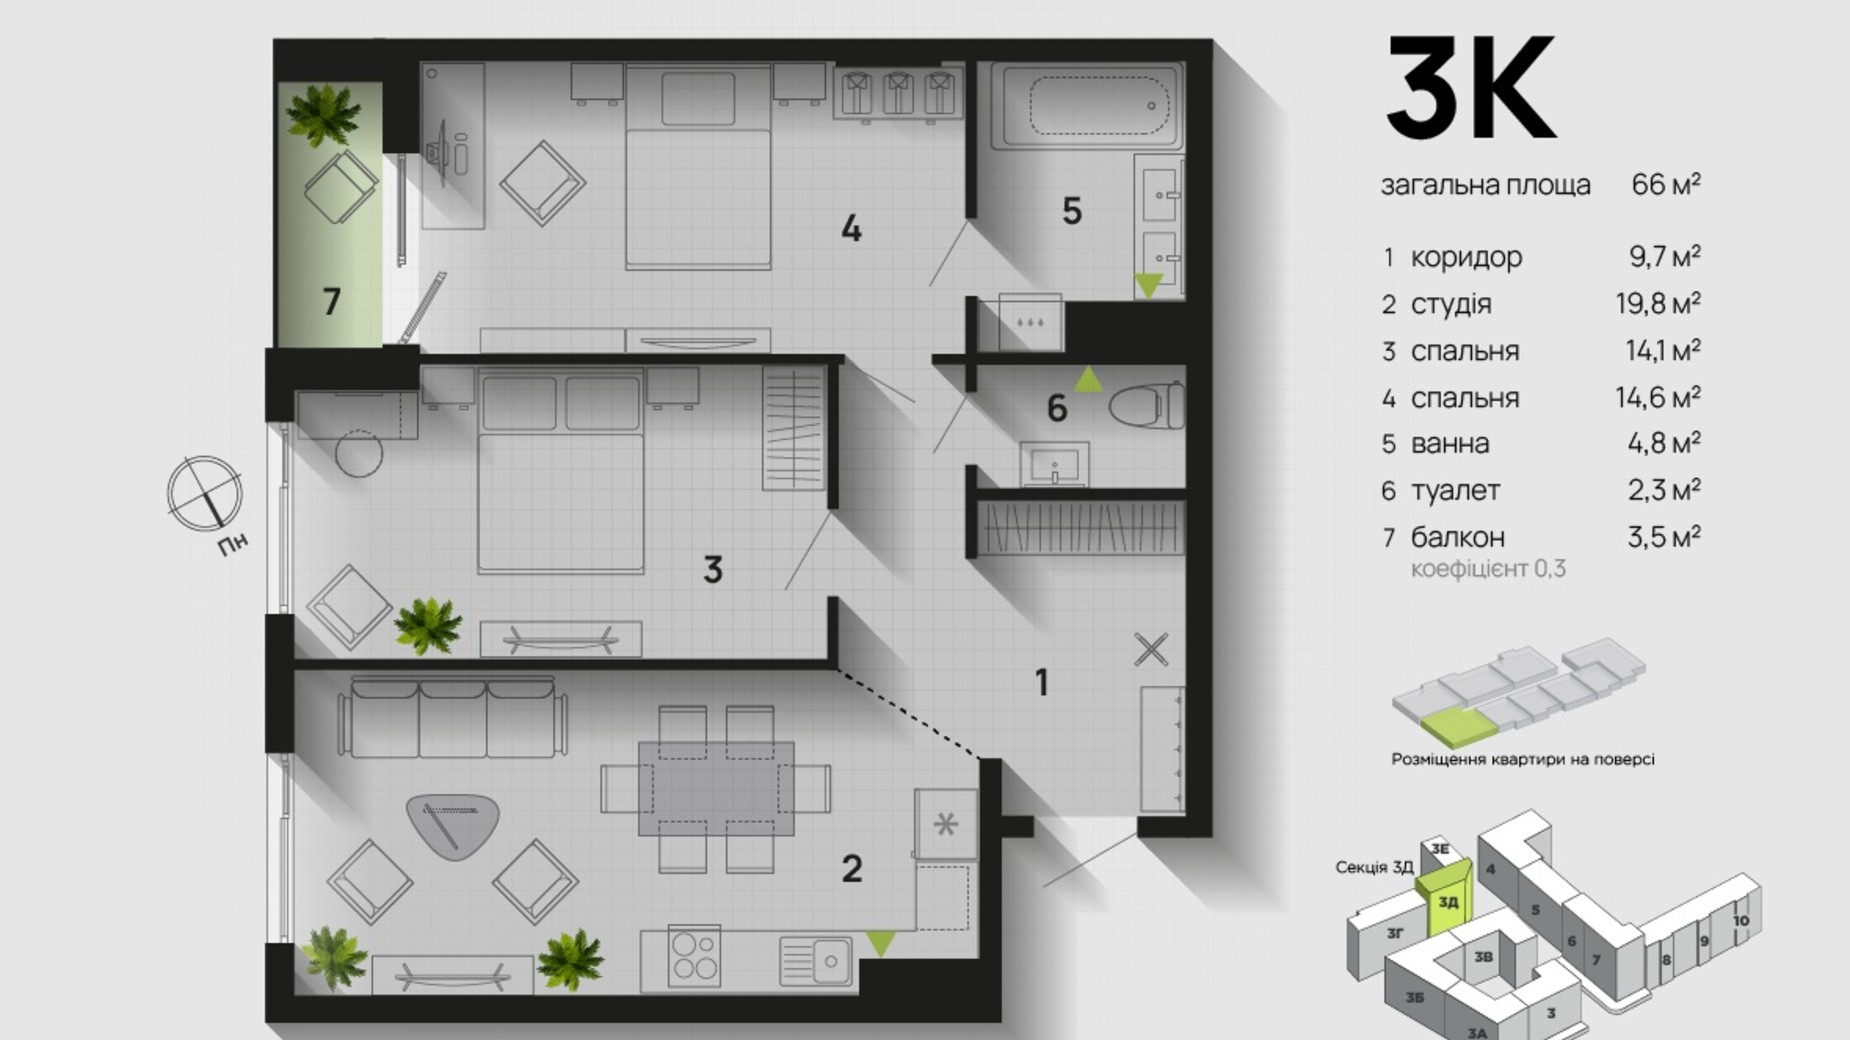 Планировка 3-комнатной квартиры в ЖК Парковая Аллея 66 м², фото 611348